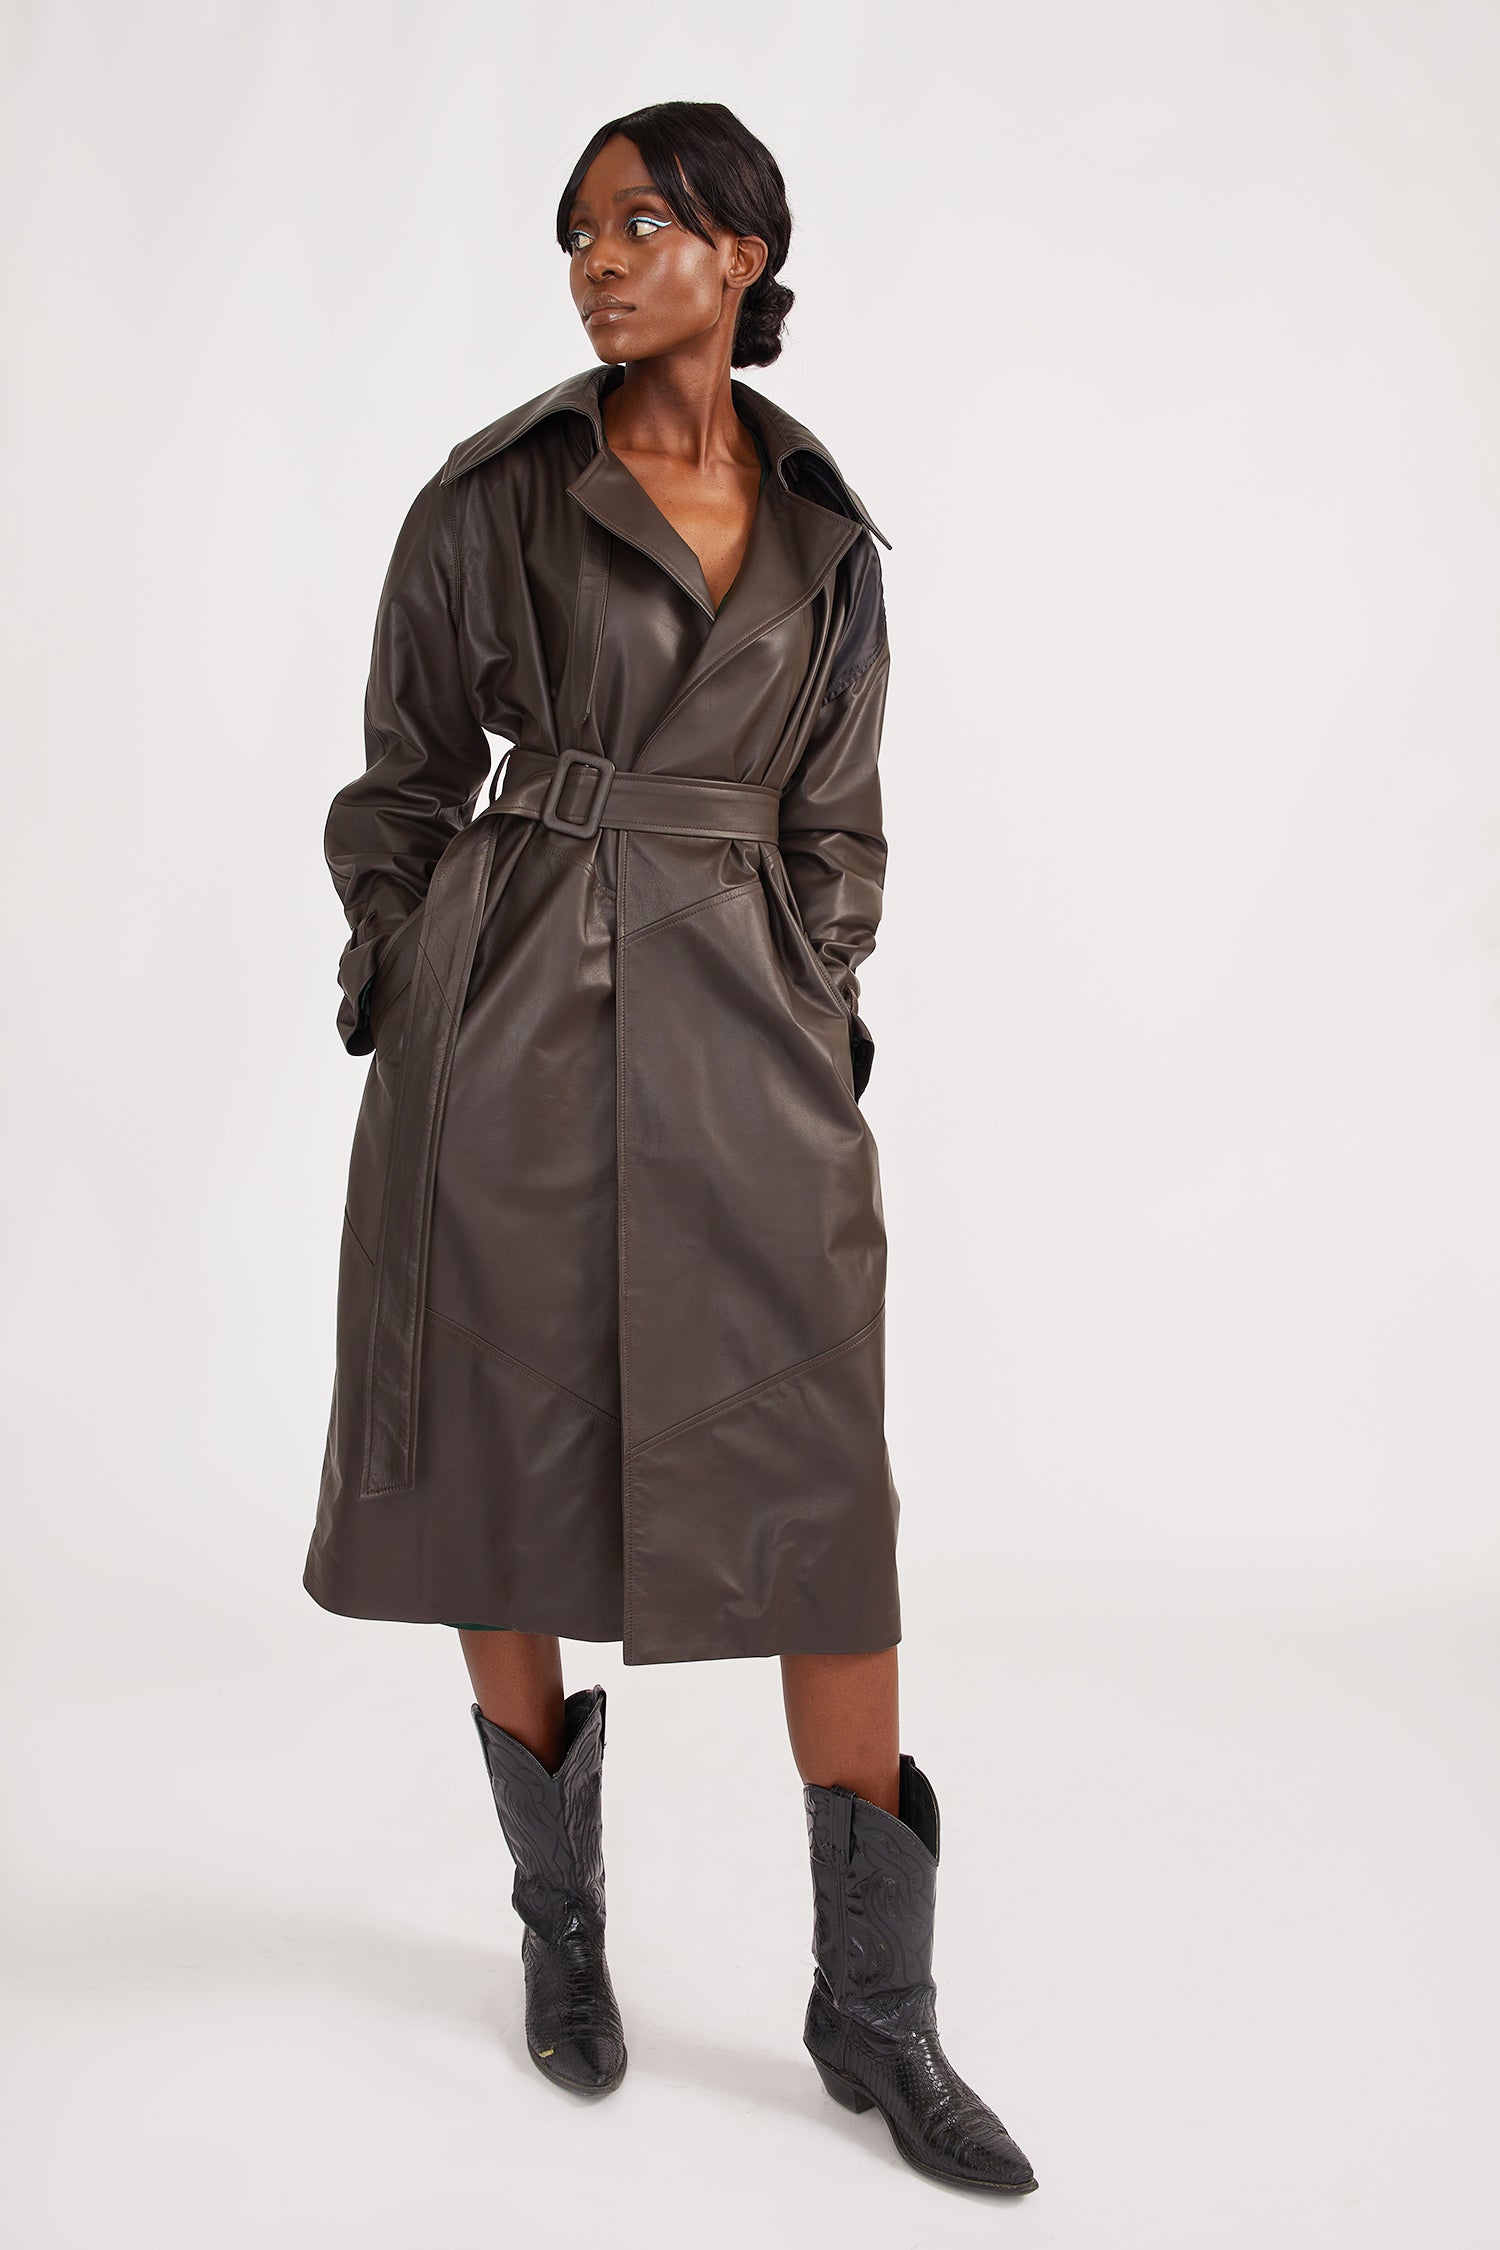 Brown Trench Coat | Women's Long Trench Coat • Alyson Eastman